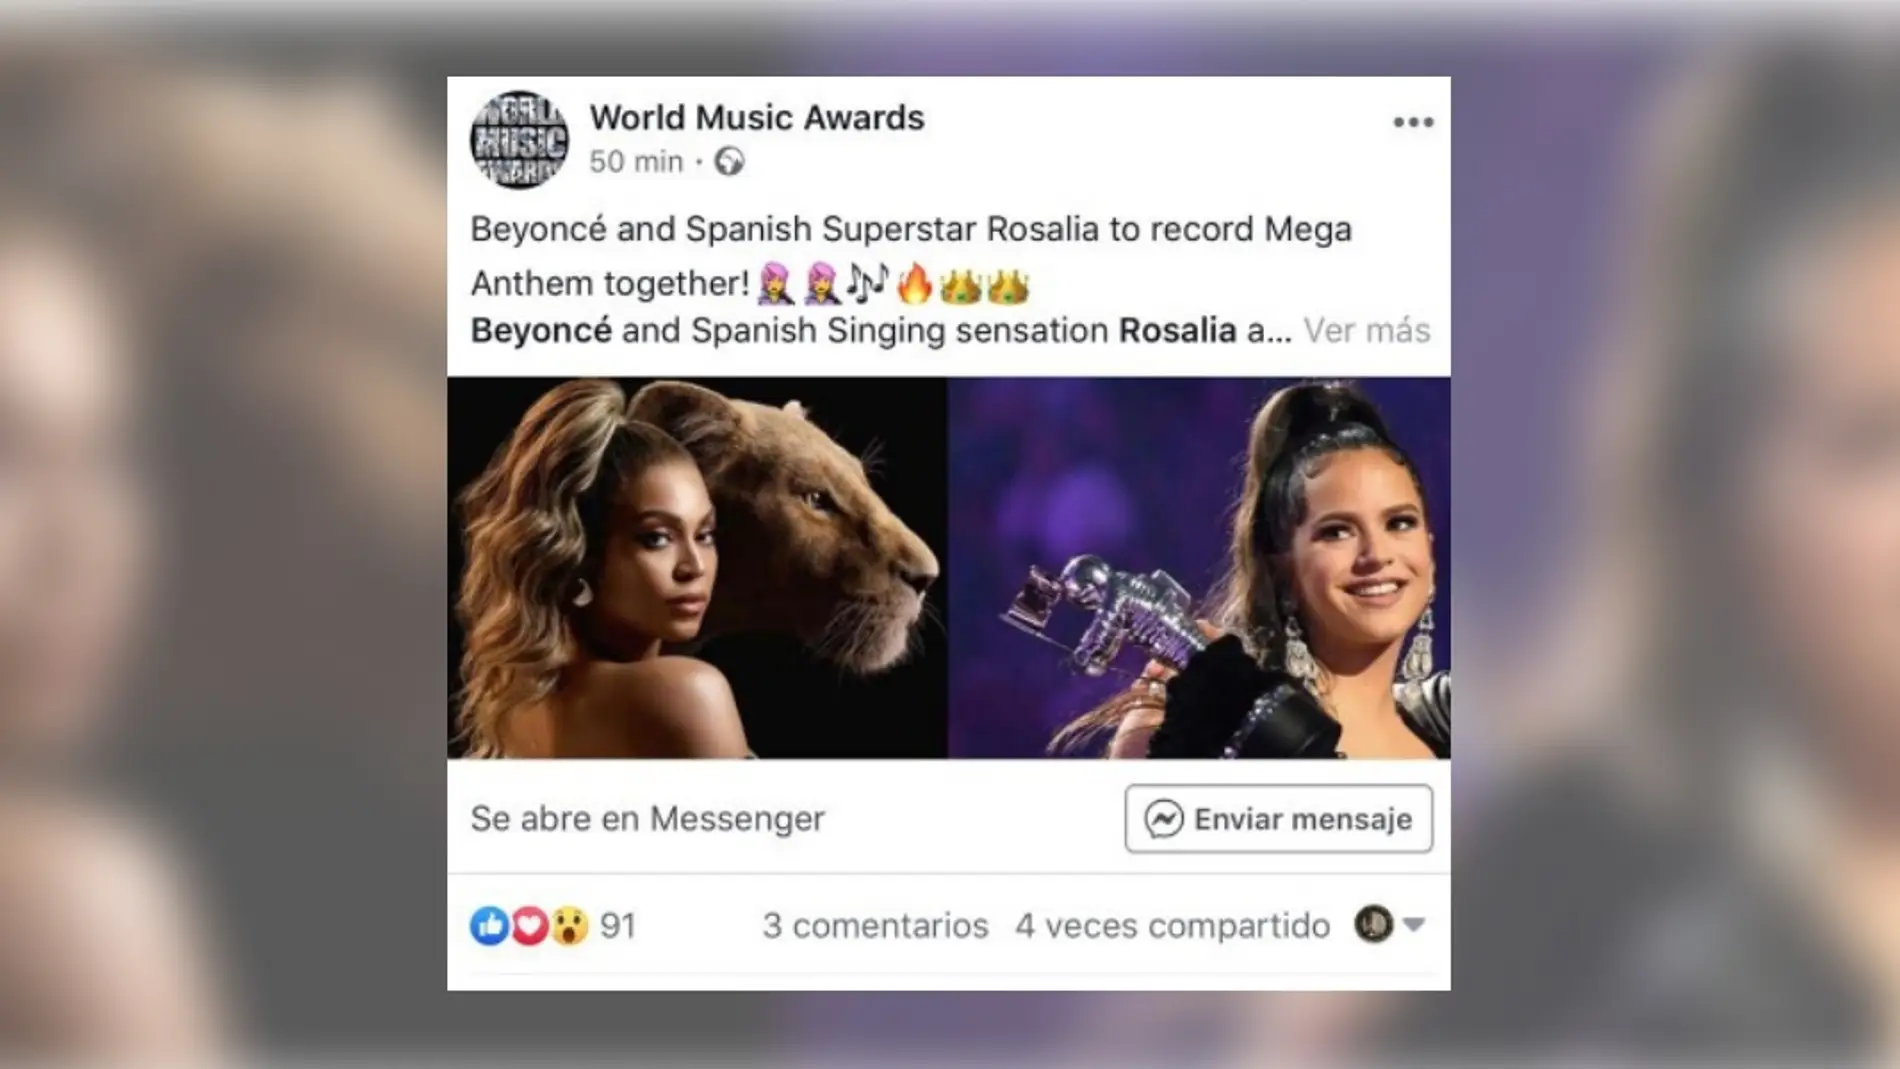 ¿Están preparando juntas Rosalía y Beyoncé el “gran himno” de 2020?